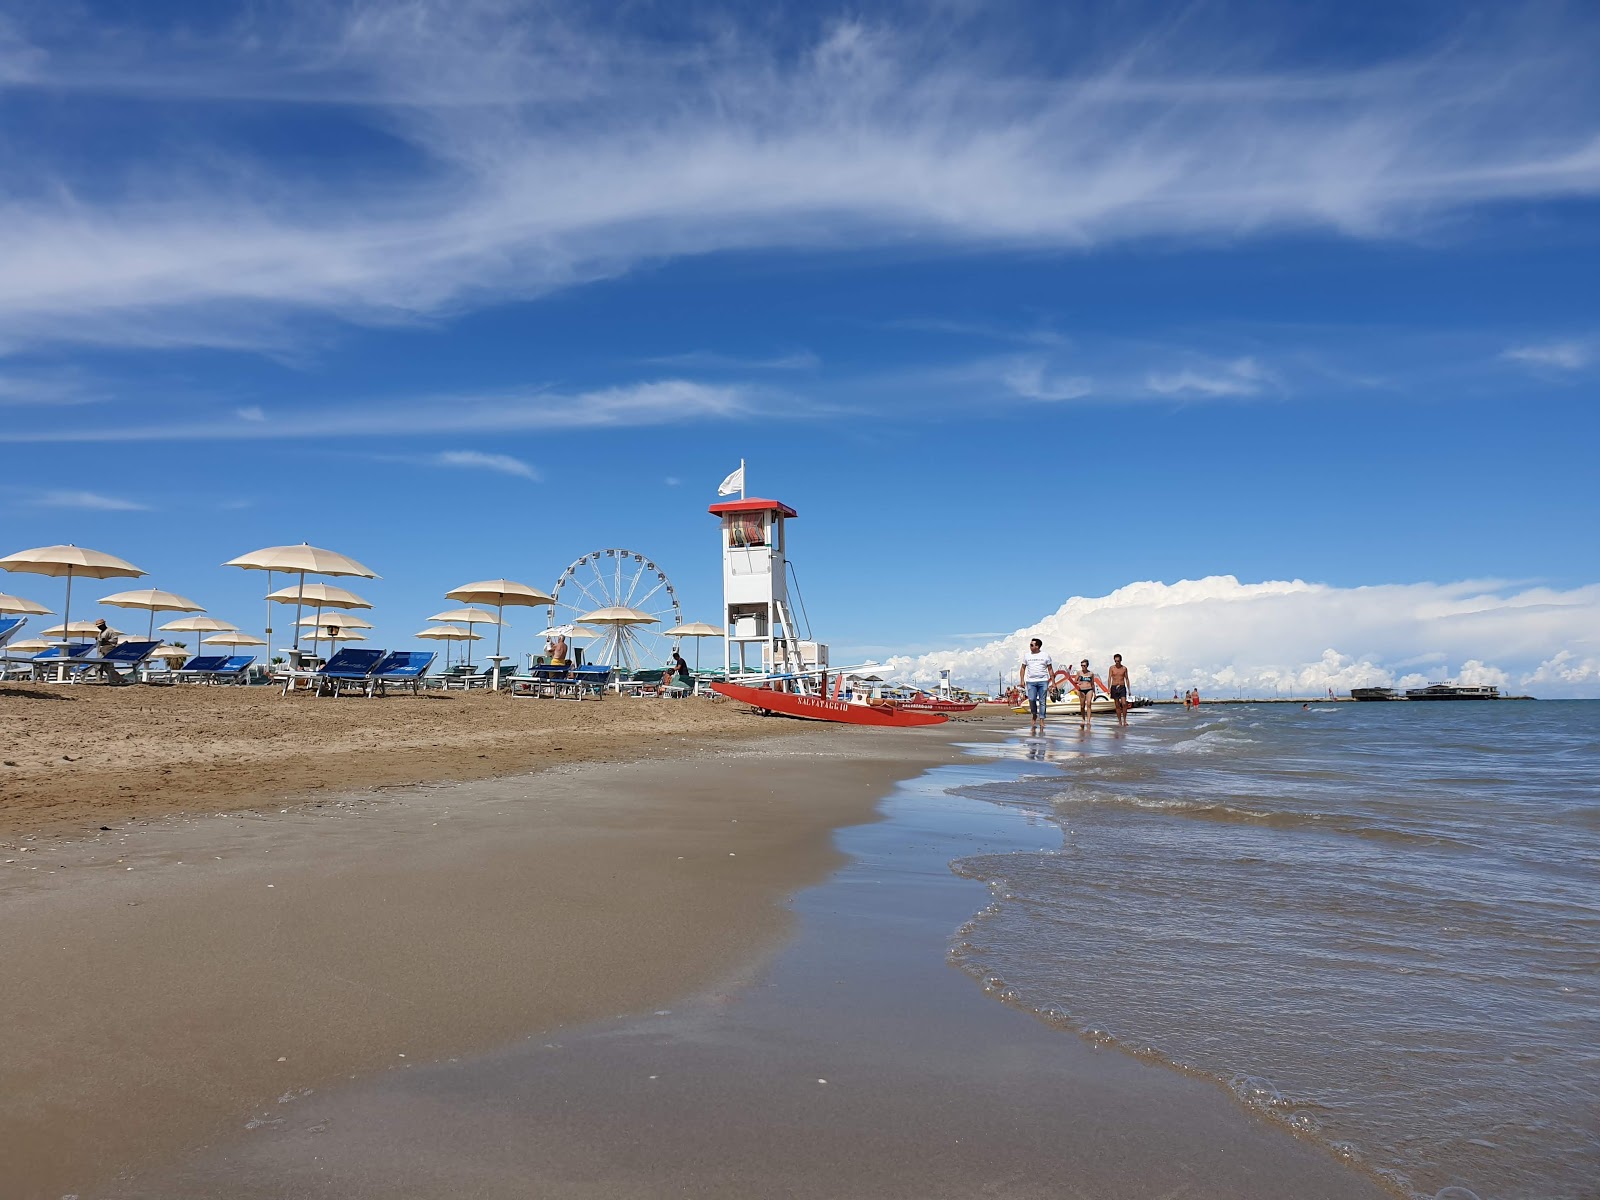 Zdjęcie Rimini beach z powierzchnią jasny, drobny piasek